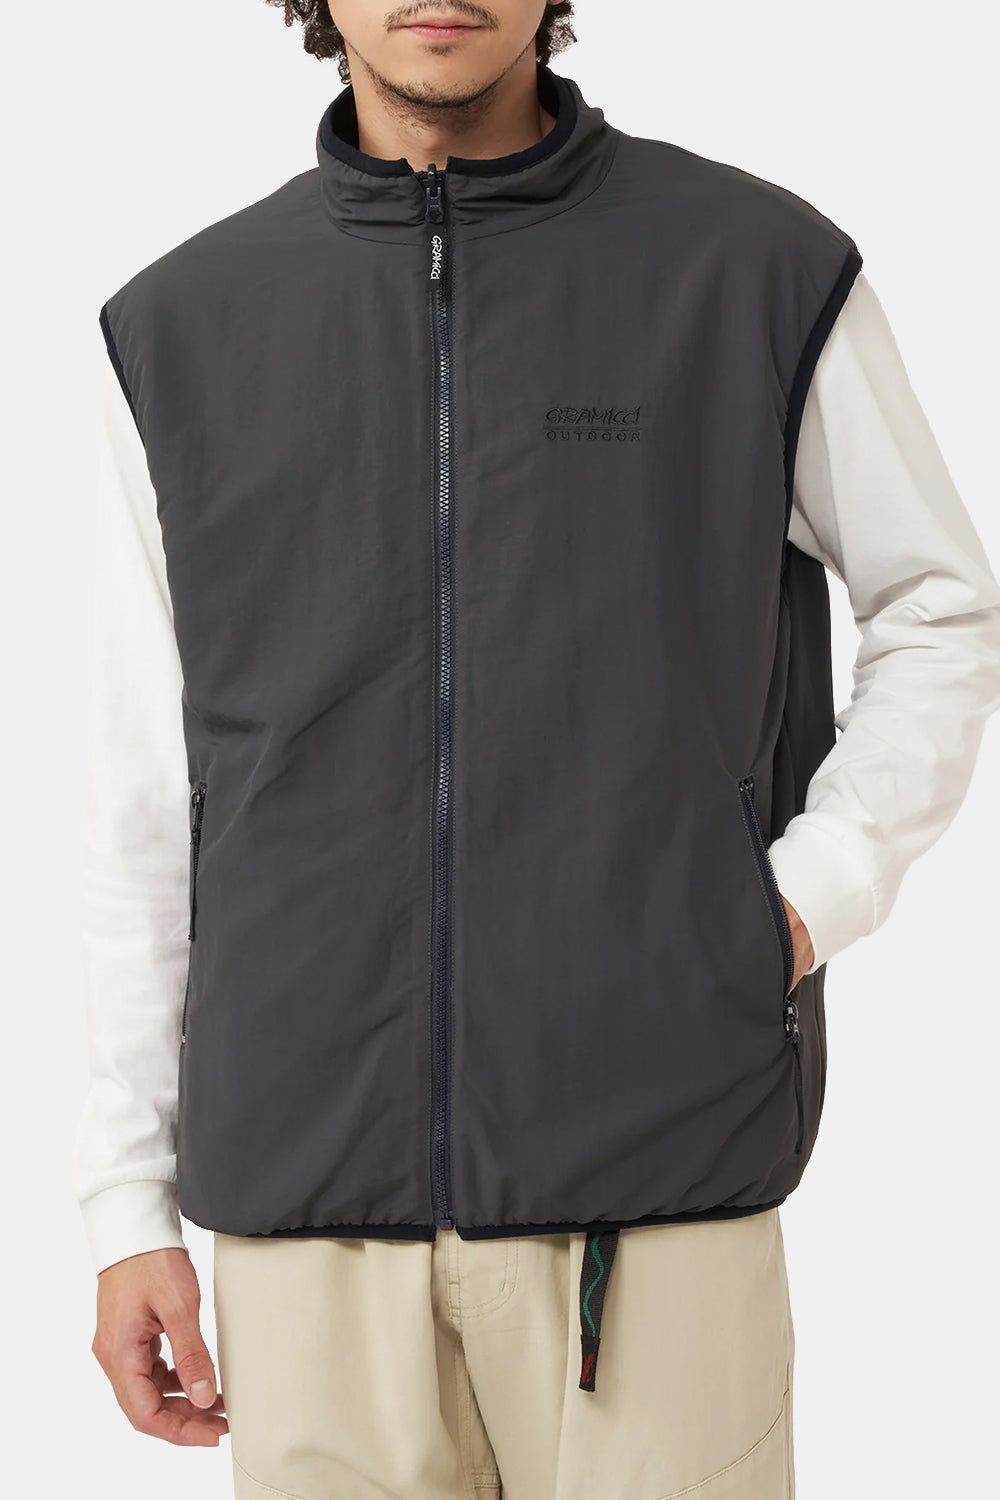 Gramicci Reversible Fleece Vest (Dark Navy)